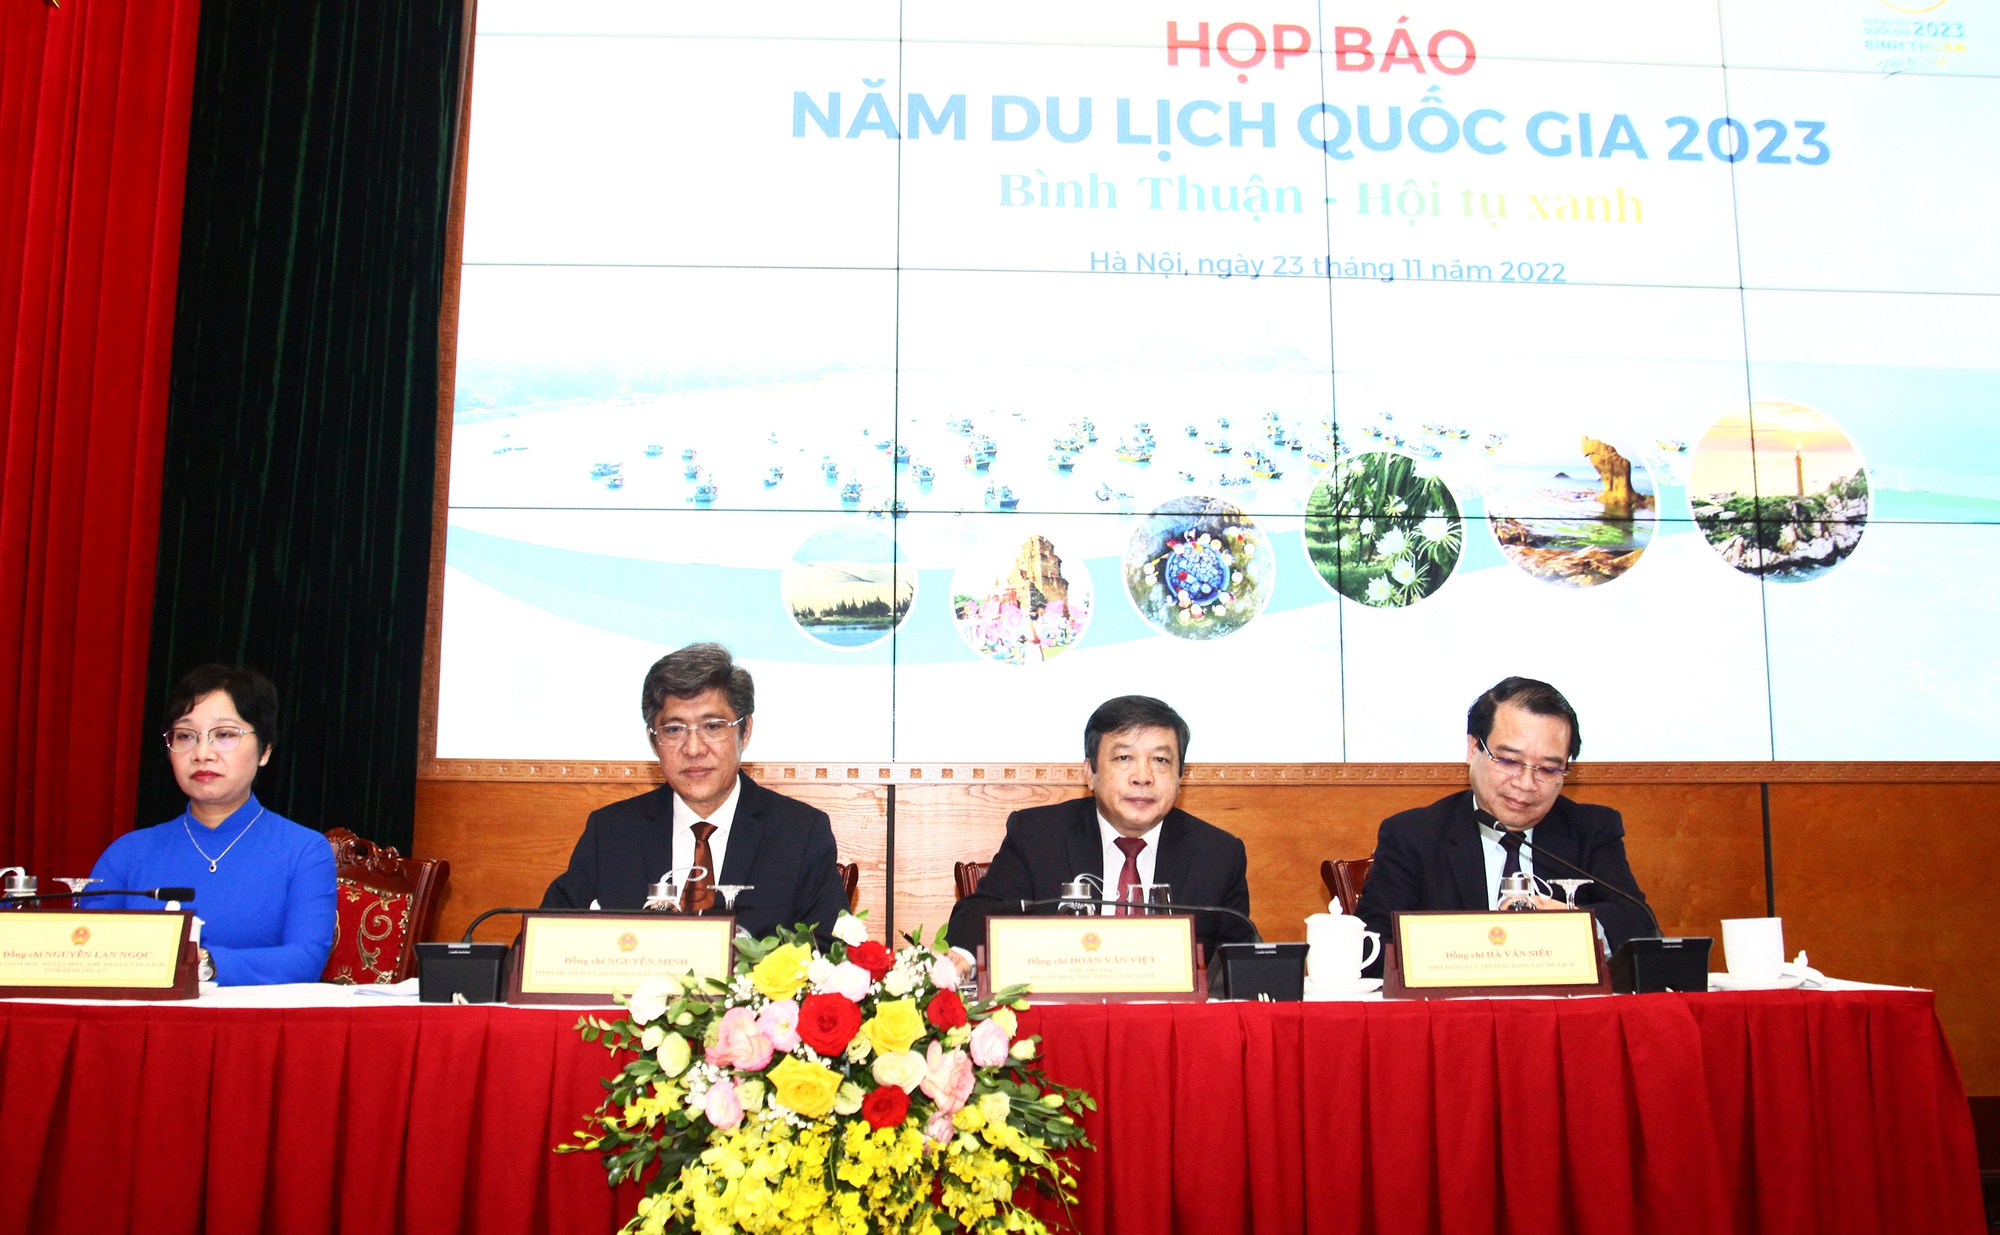 Năm Du lịch quốc gia 2023: Hội tụ và phát huy những giá trị, tiềm năng của du lịch Bình Thuận - Ảnh 1.